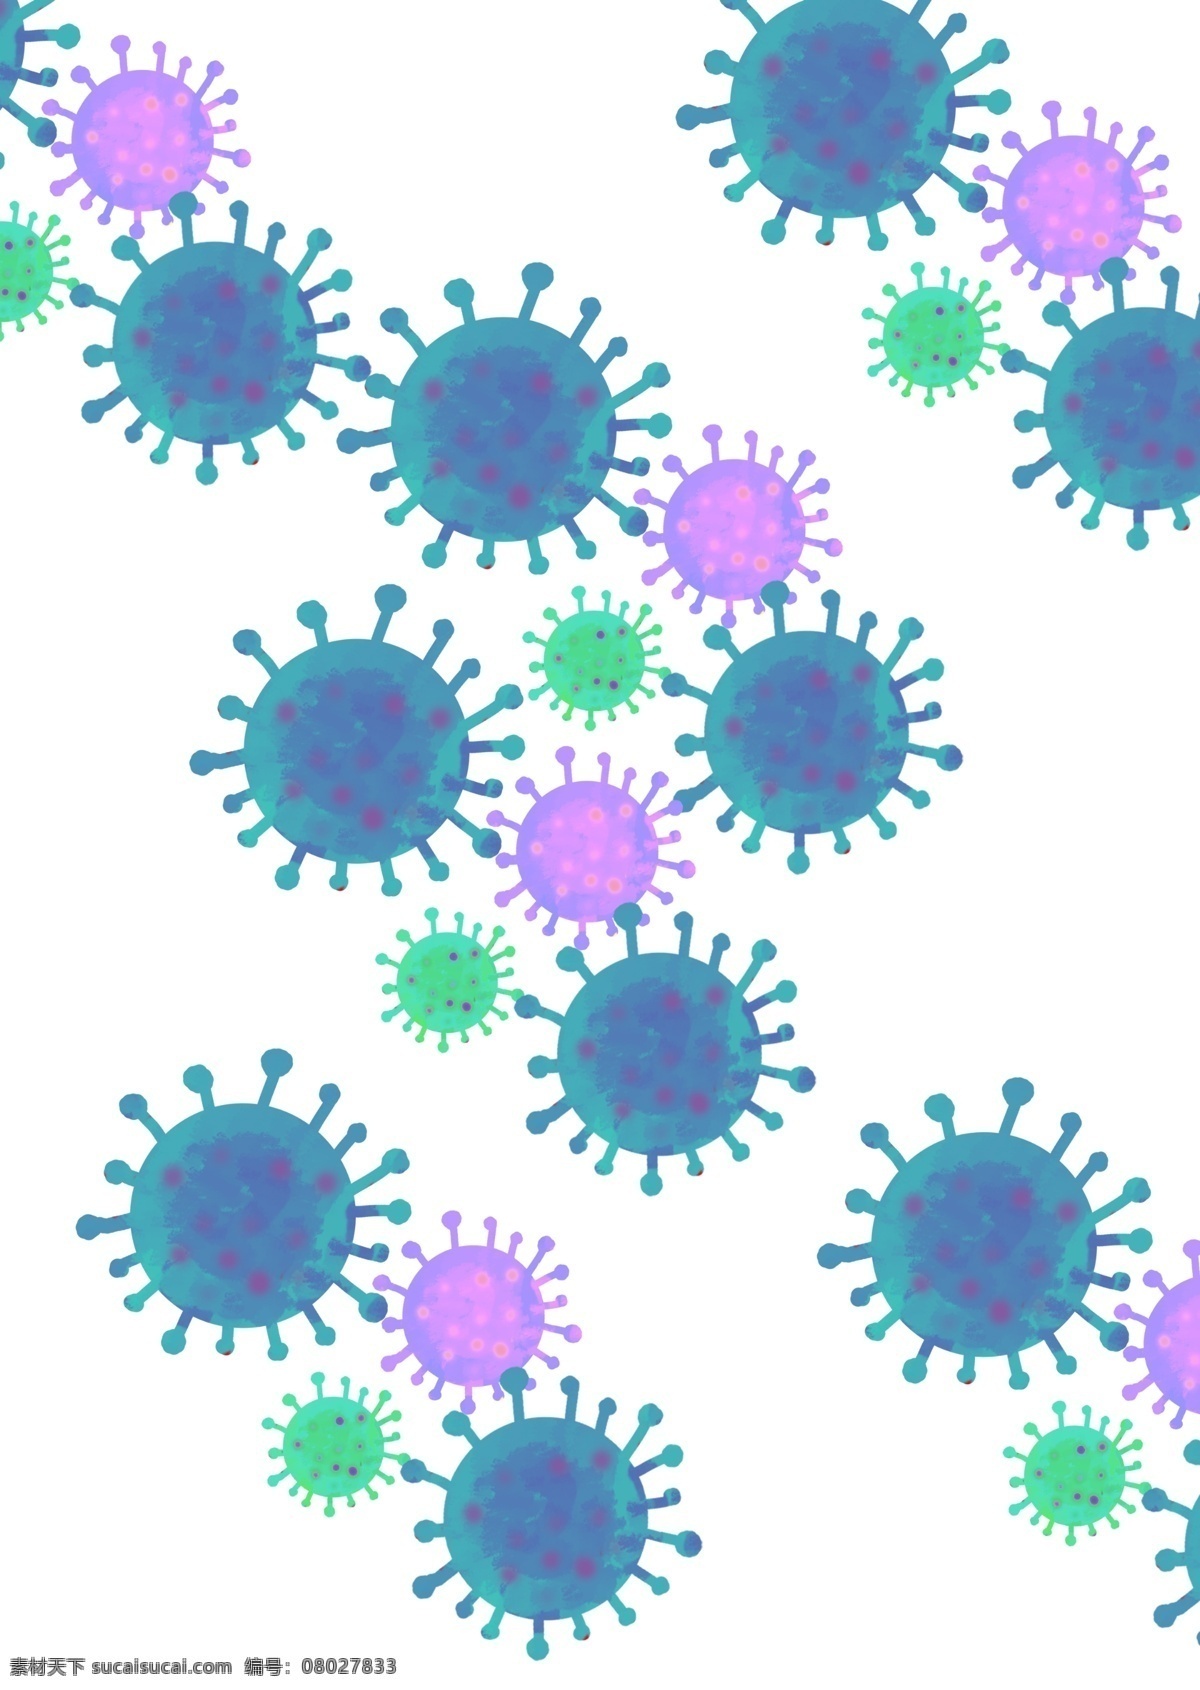 病毒 病毒素材 圆形病毒 新型冠状病毒 病菌 细菌 微生物 流感 感冒 卡通设计